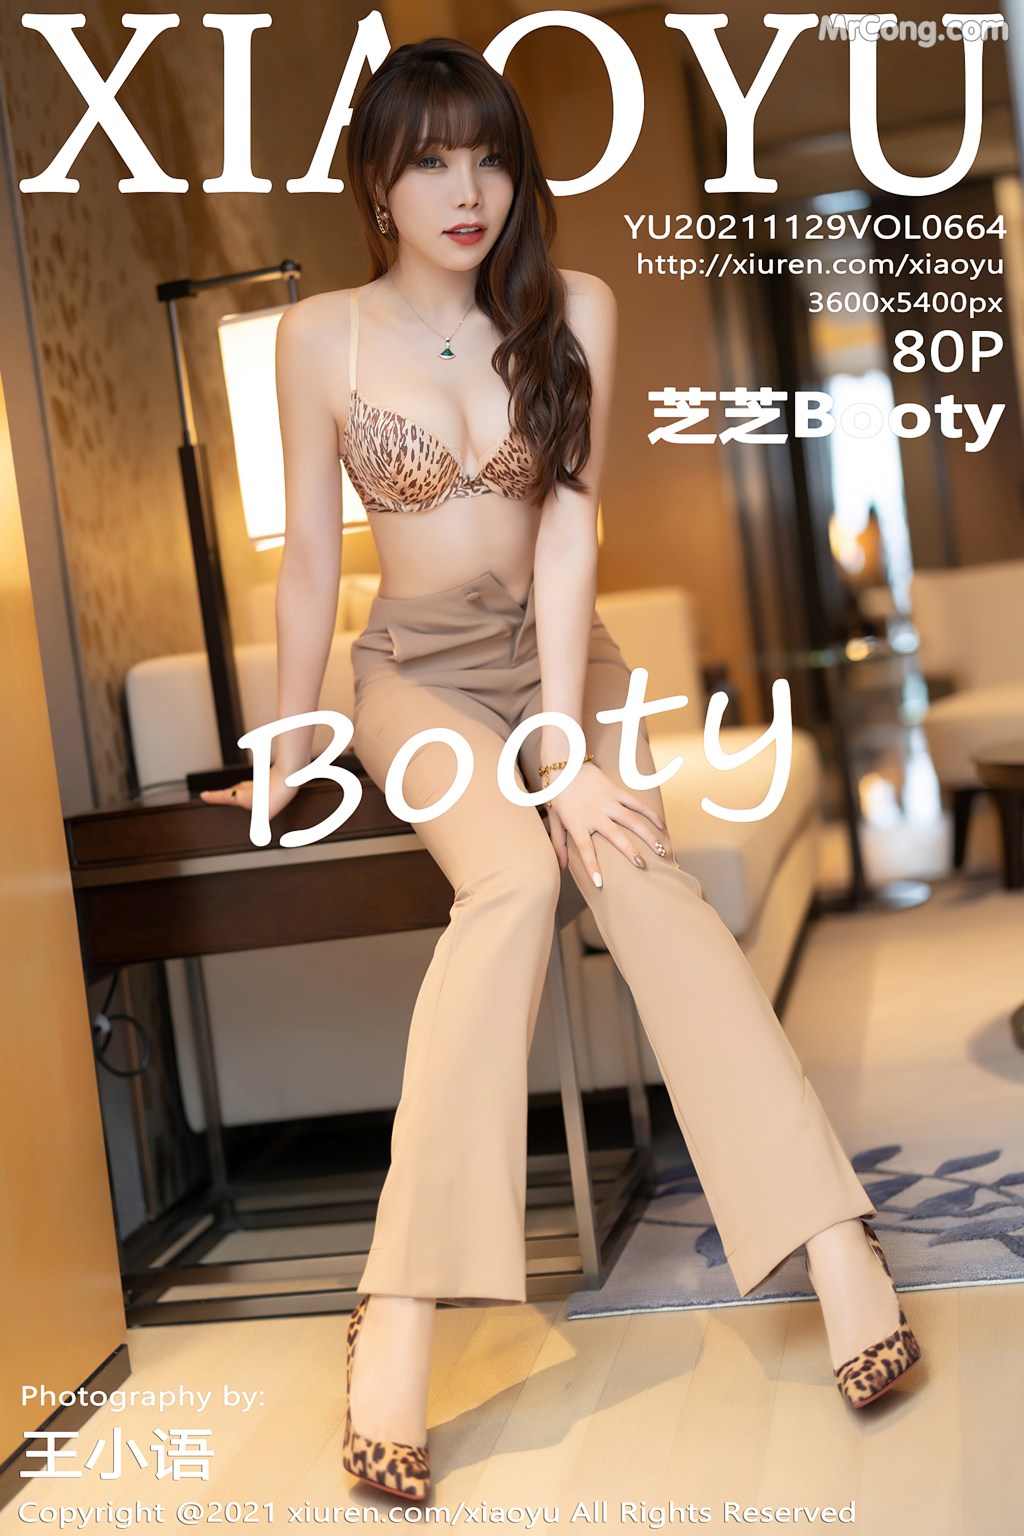 XiaoYu Vol.664: Booty (芝芝) (81 photos)